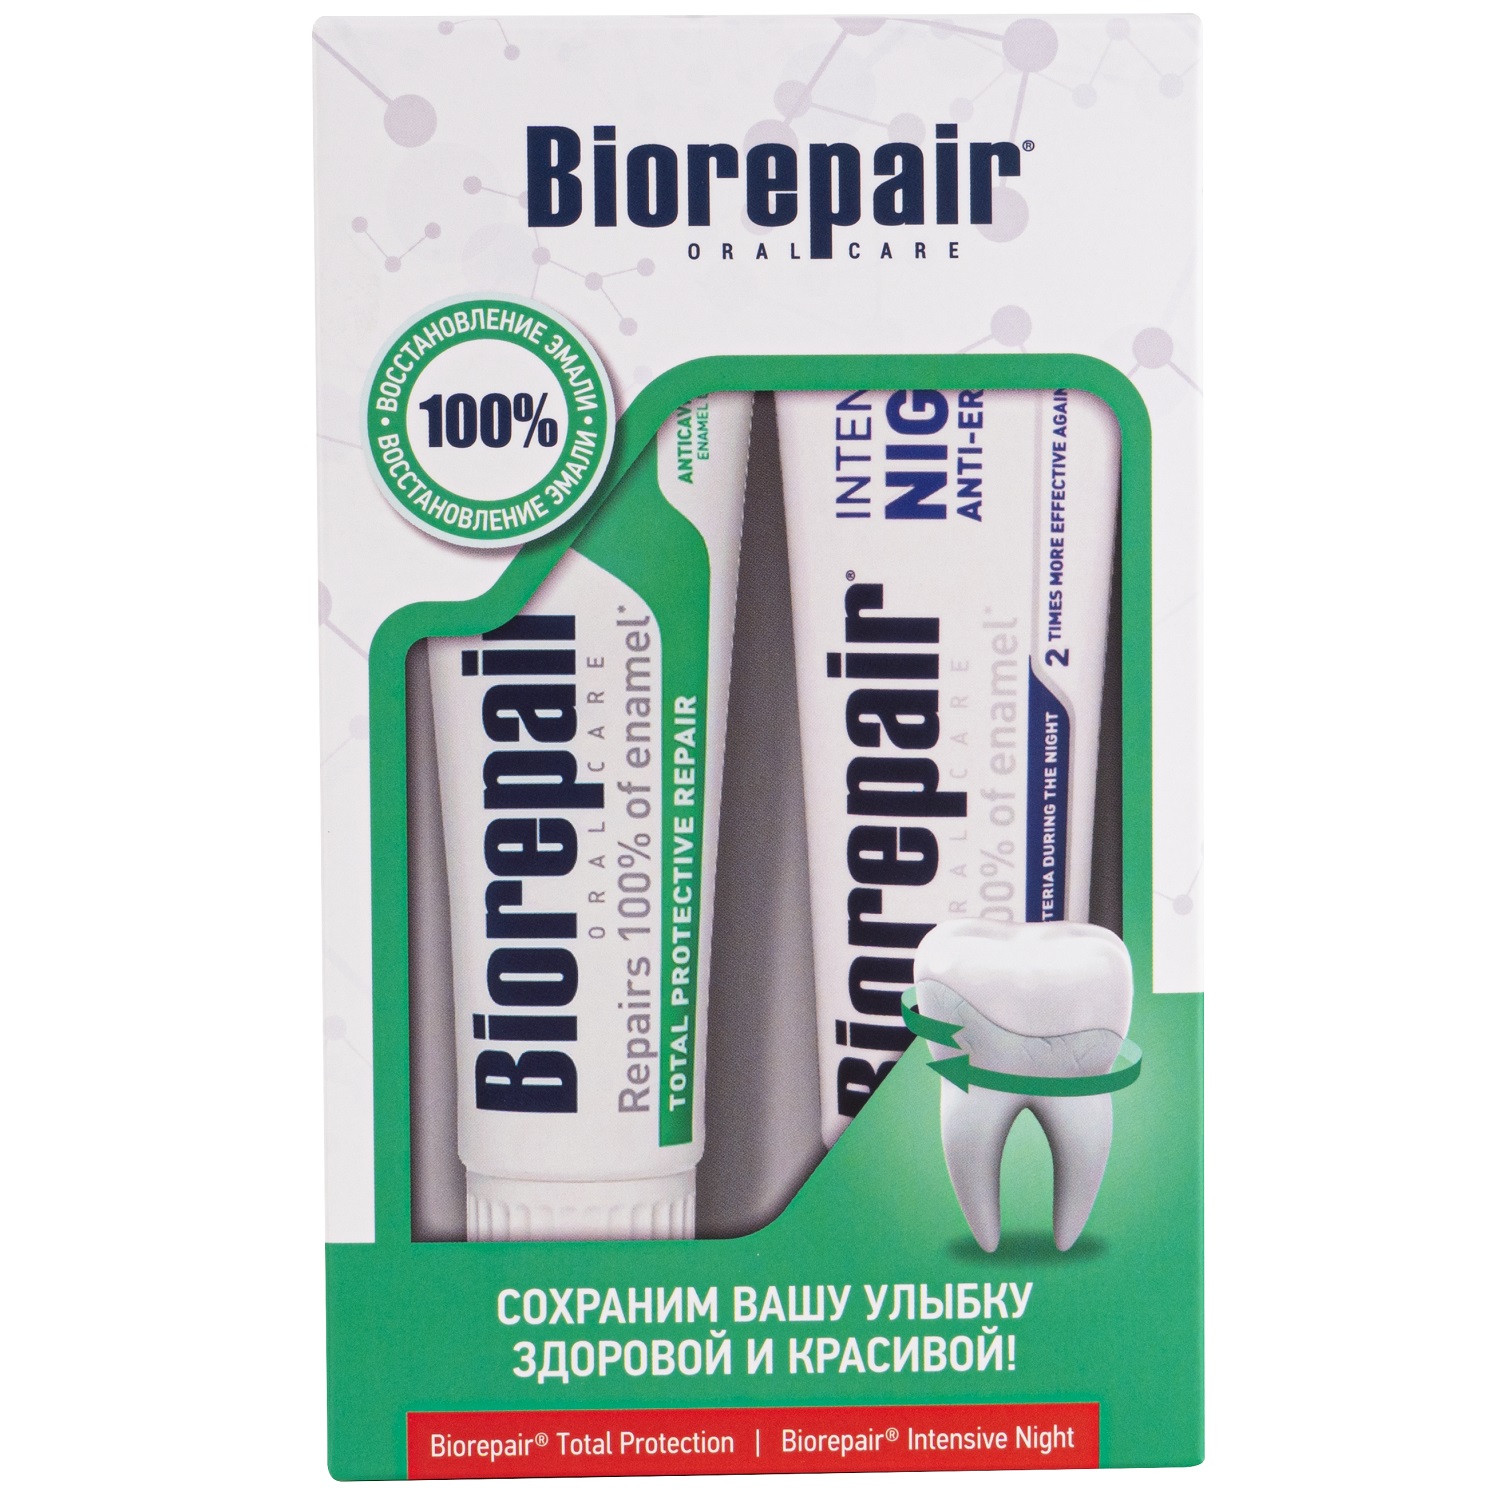 Biorepair Набор зубных паст Защита улыбки 24/7: Total Protective Repair 75 мл + Intensive Night Repair 75 мл (Biorepair, Ежедневная забот)